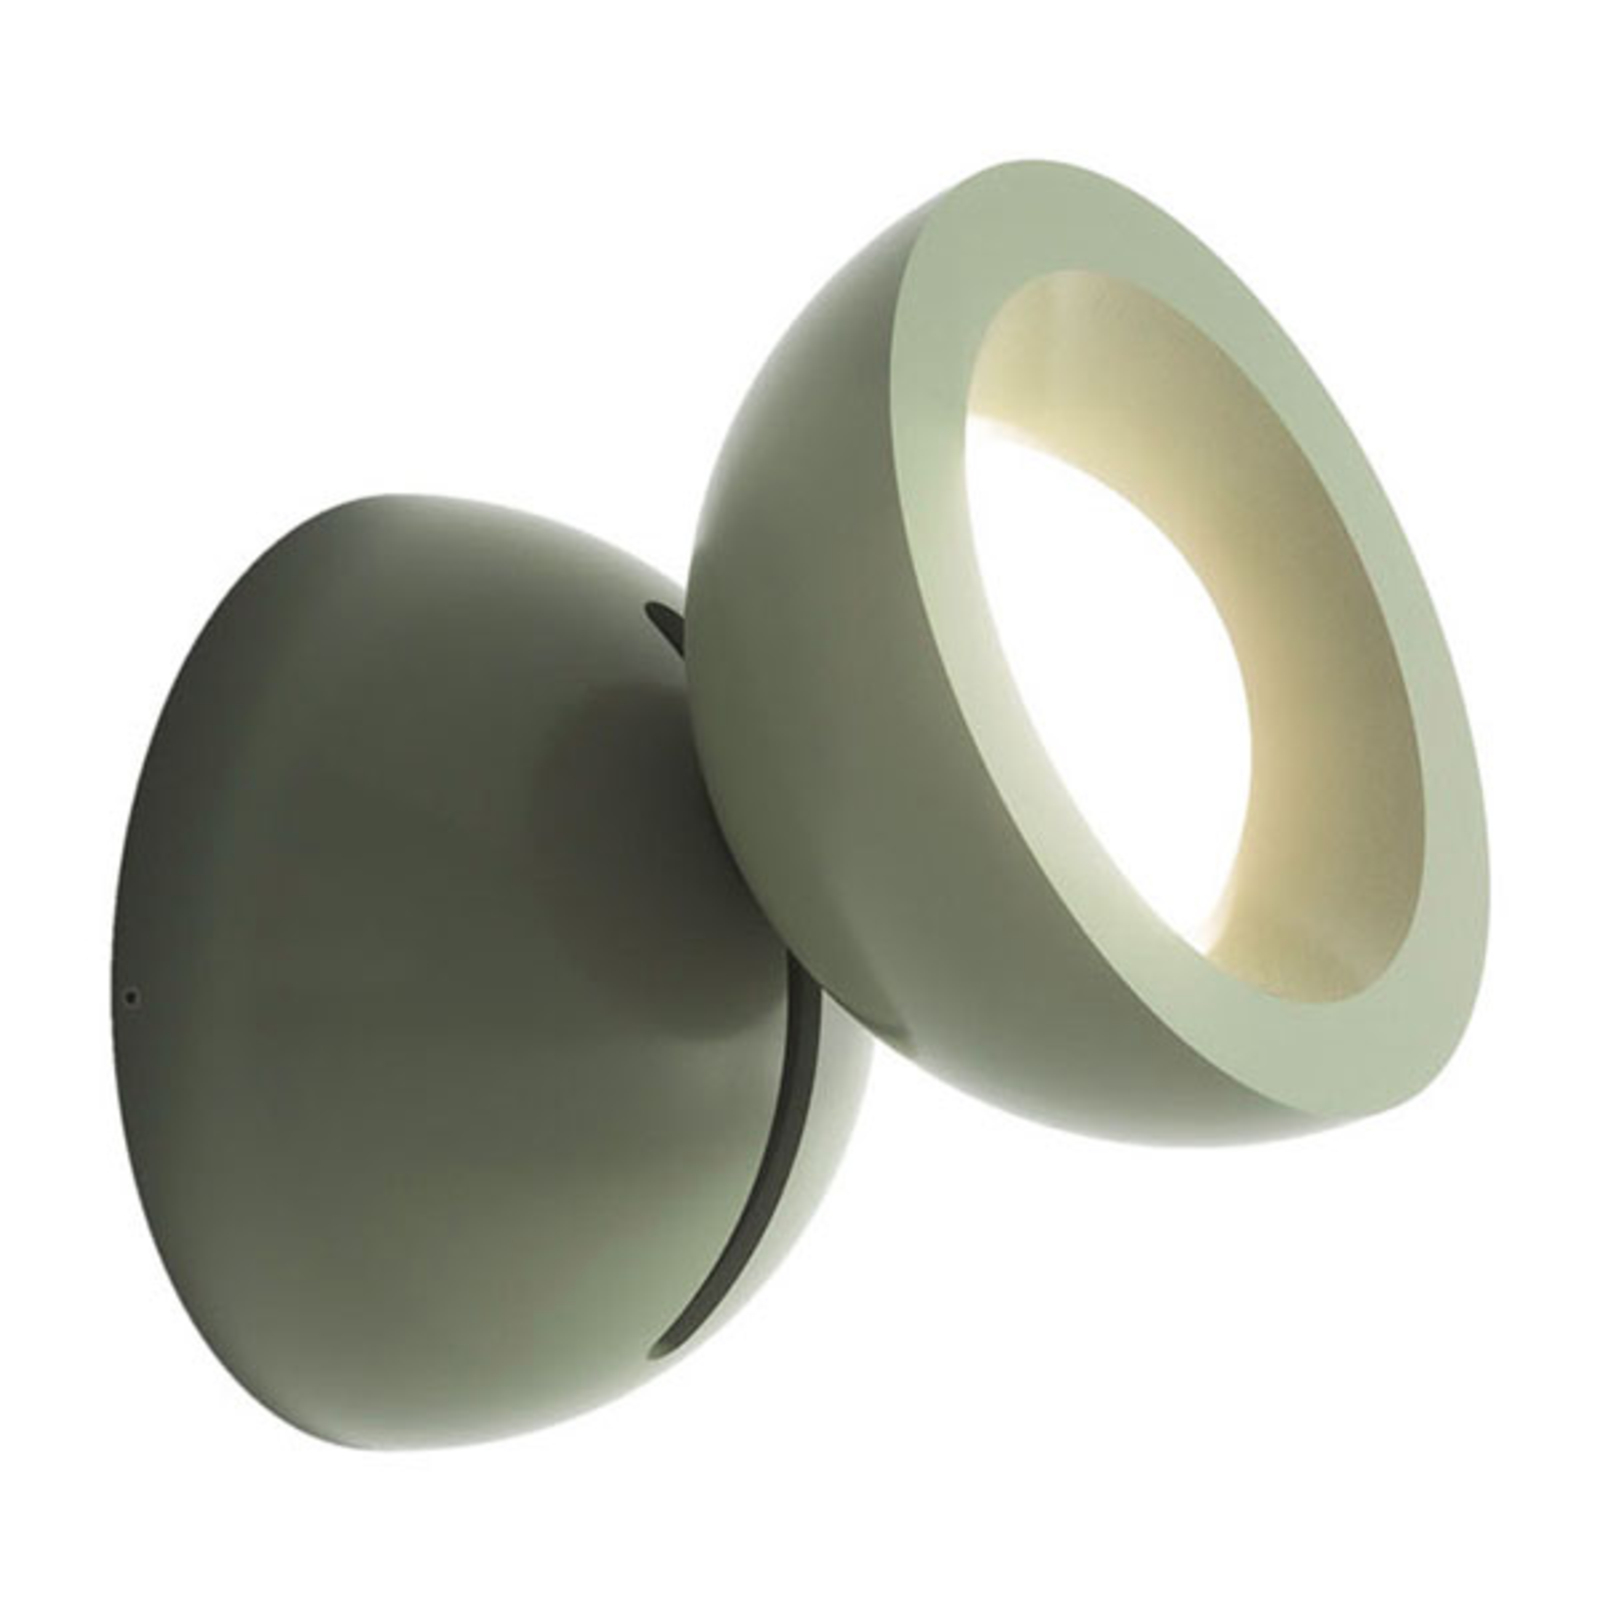 Axolight DoDot LED-Wandleuchte, grün15°